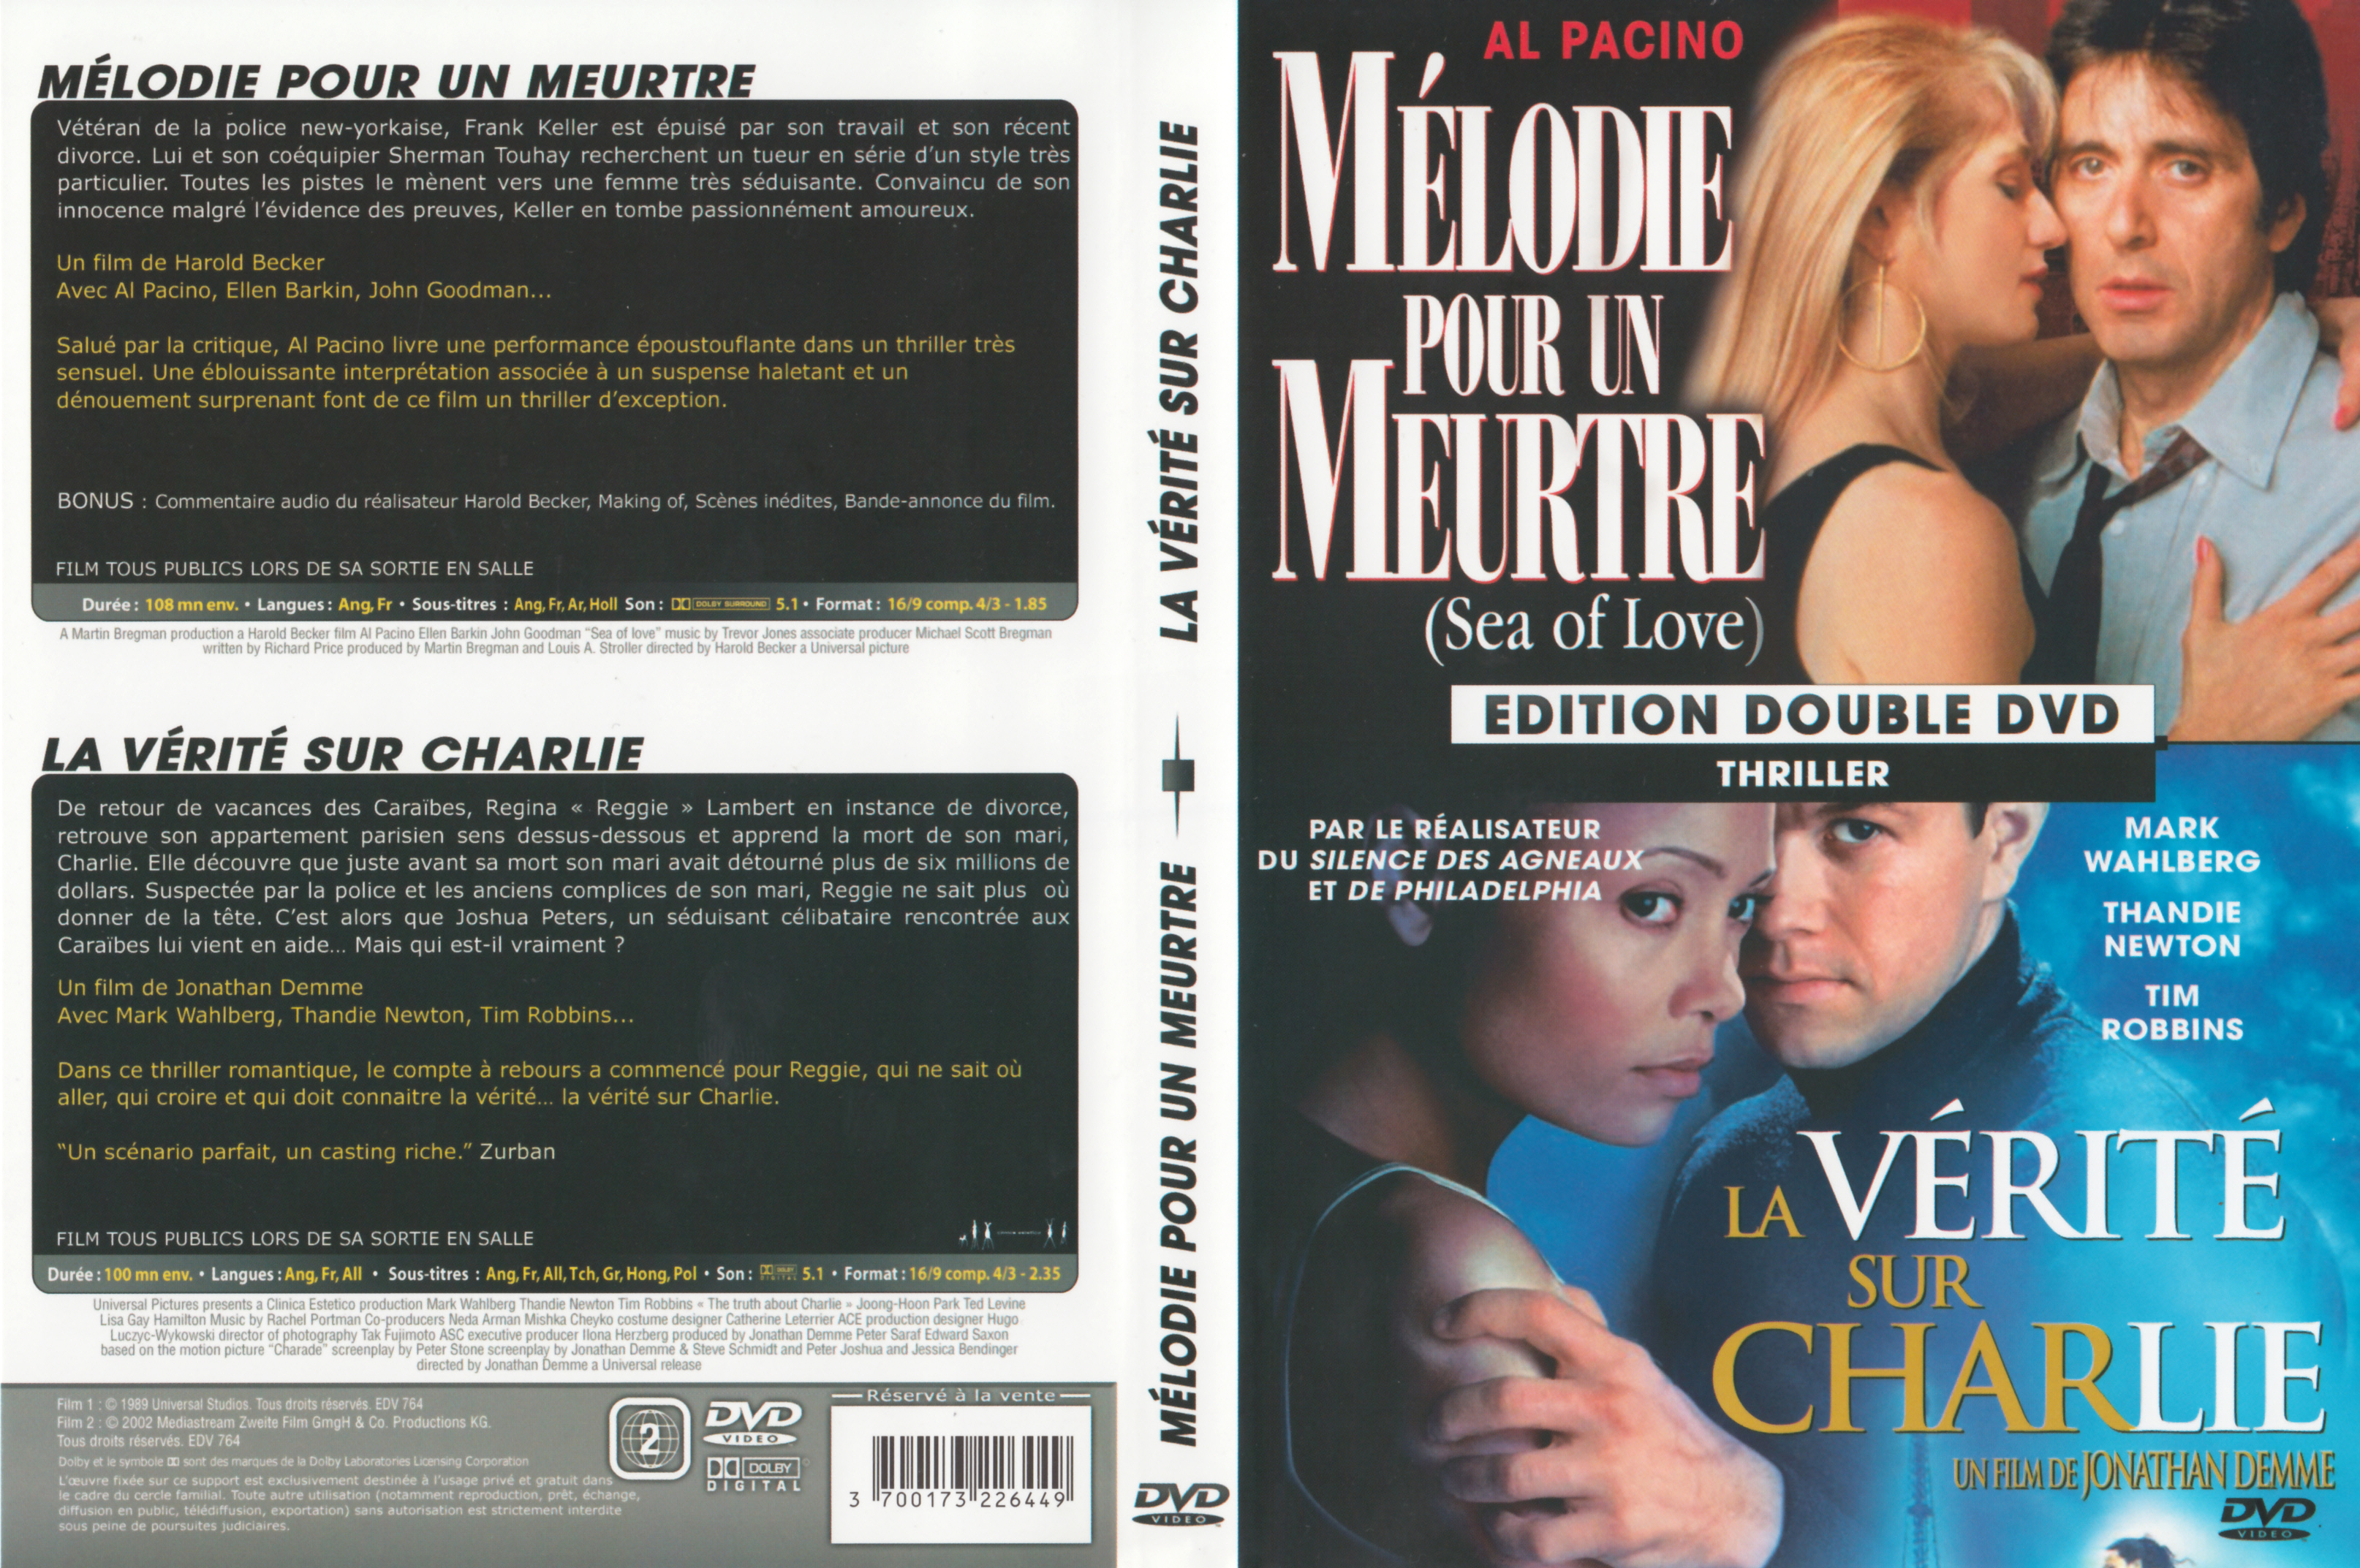 Jaquette DVD Mlodie pour un meurtre + La vrit sur Charlie